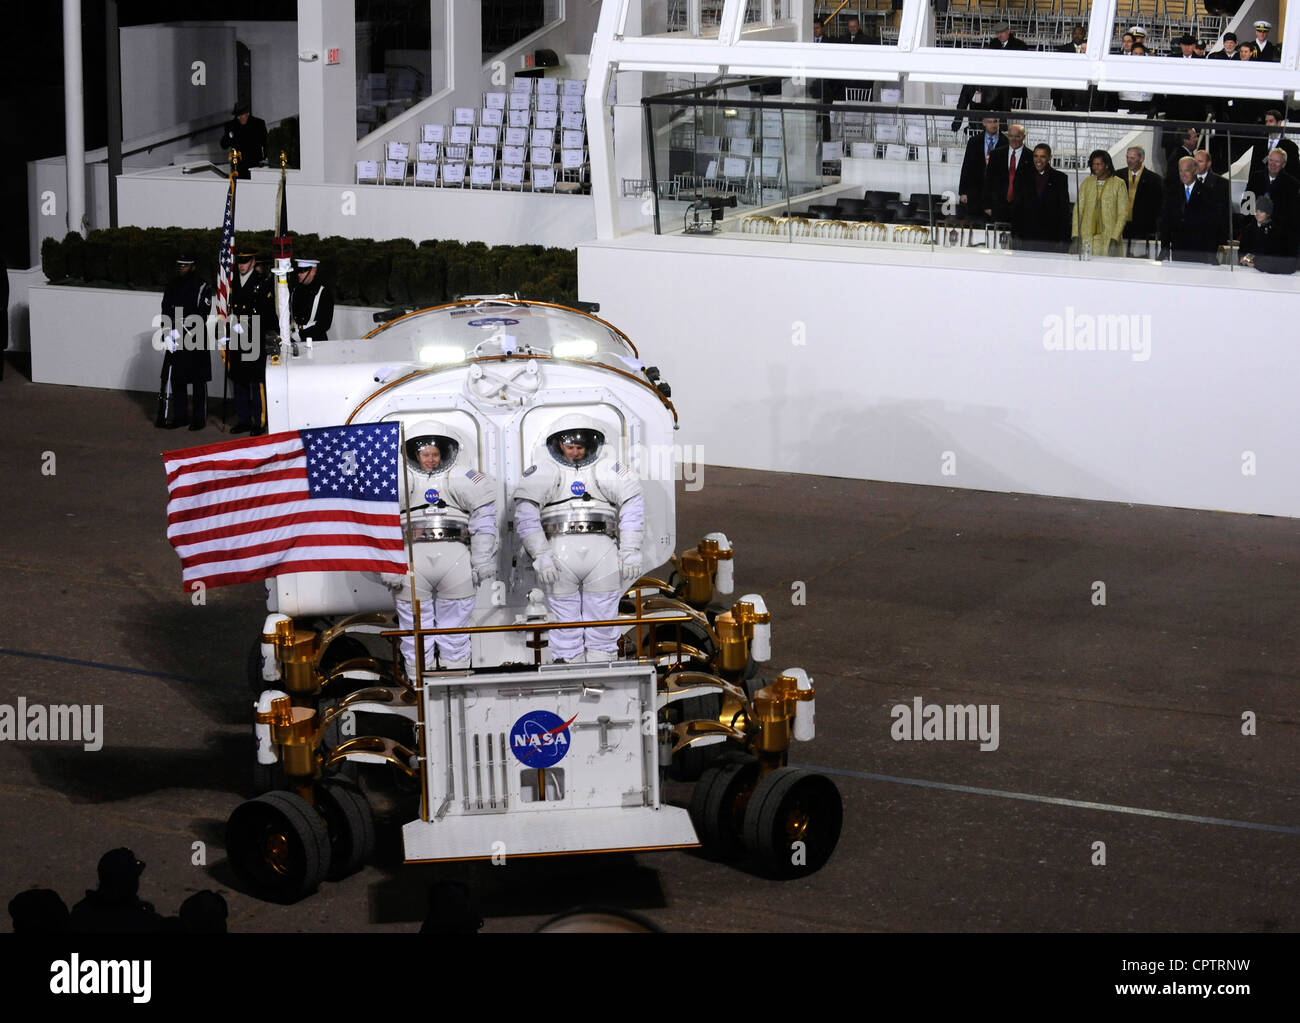 Elektrische Mondfahrzeug bei 2009 Präsidenteneinweihung parade Stockfoto